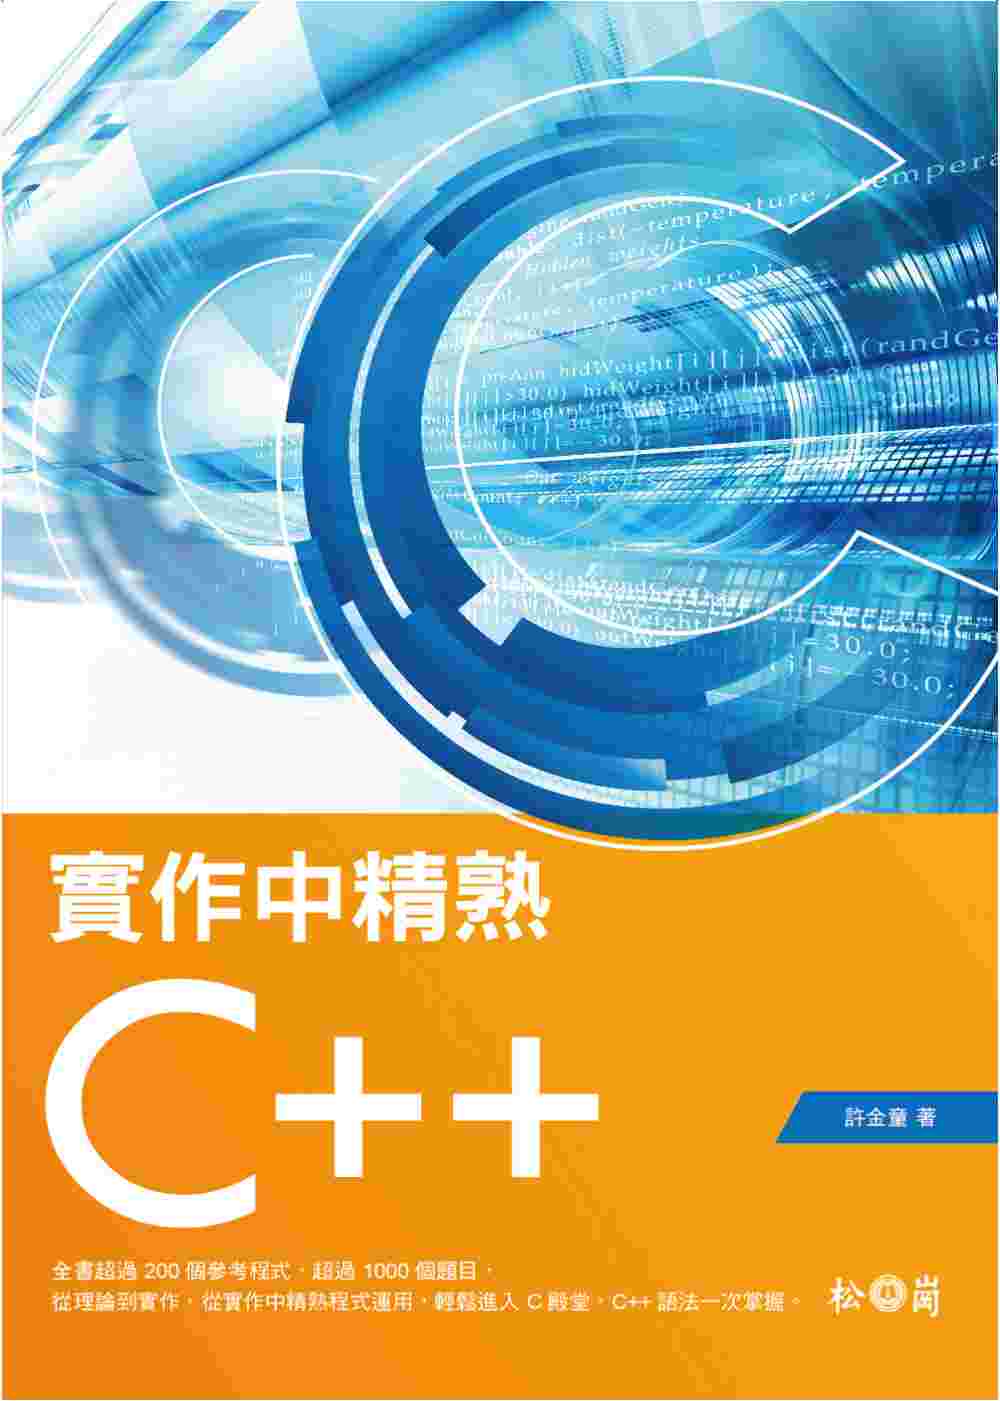 實作中精熟C++ (附CDx1)